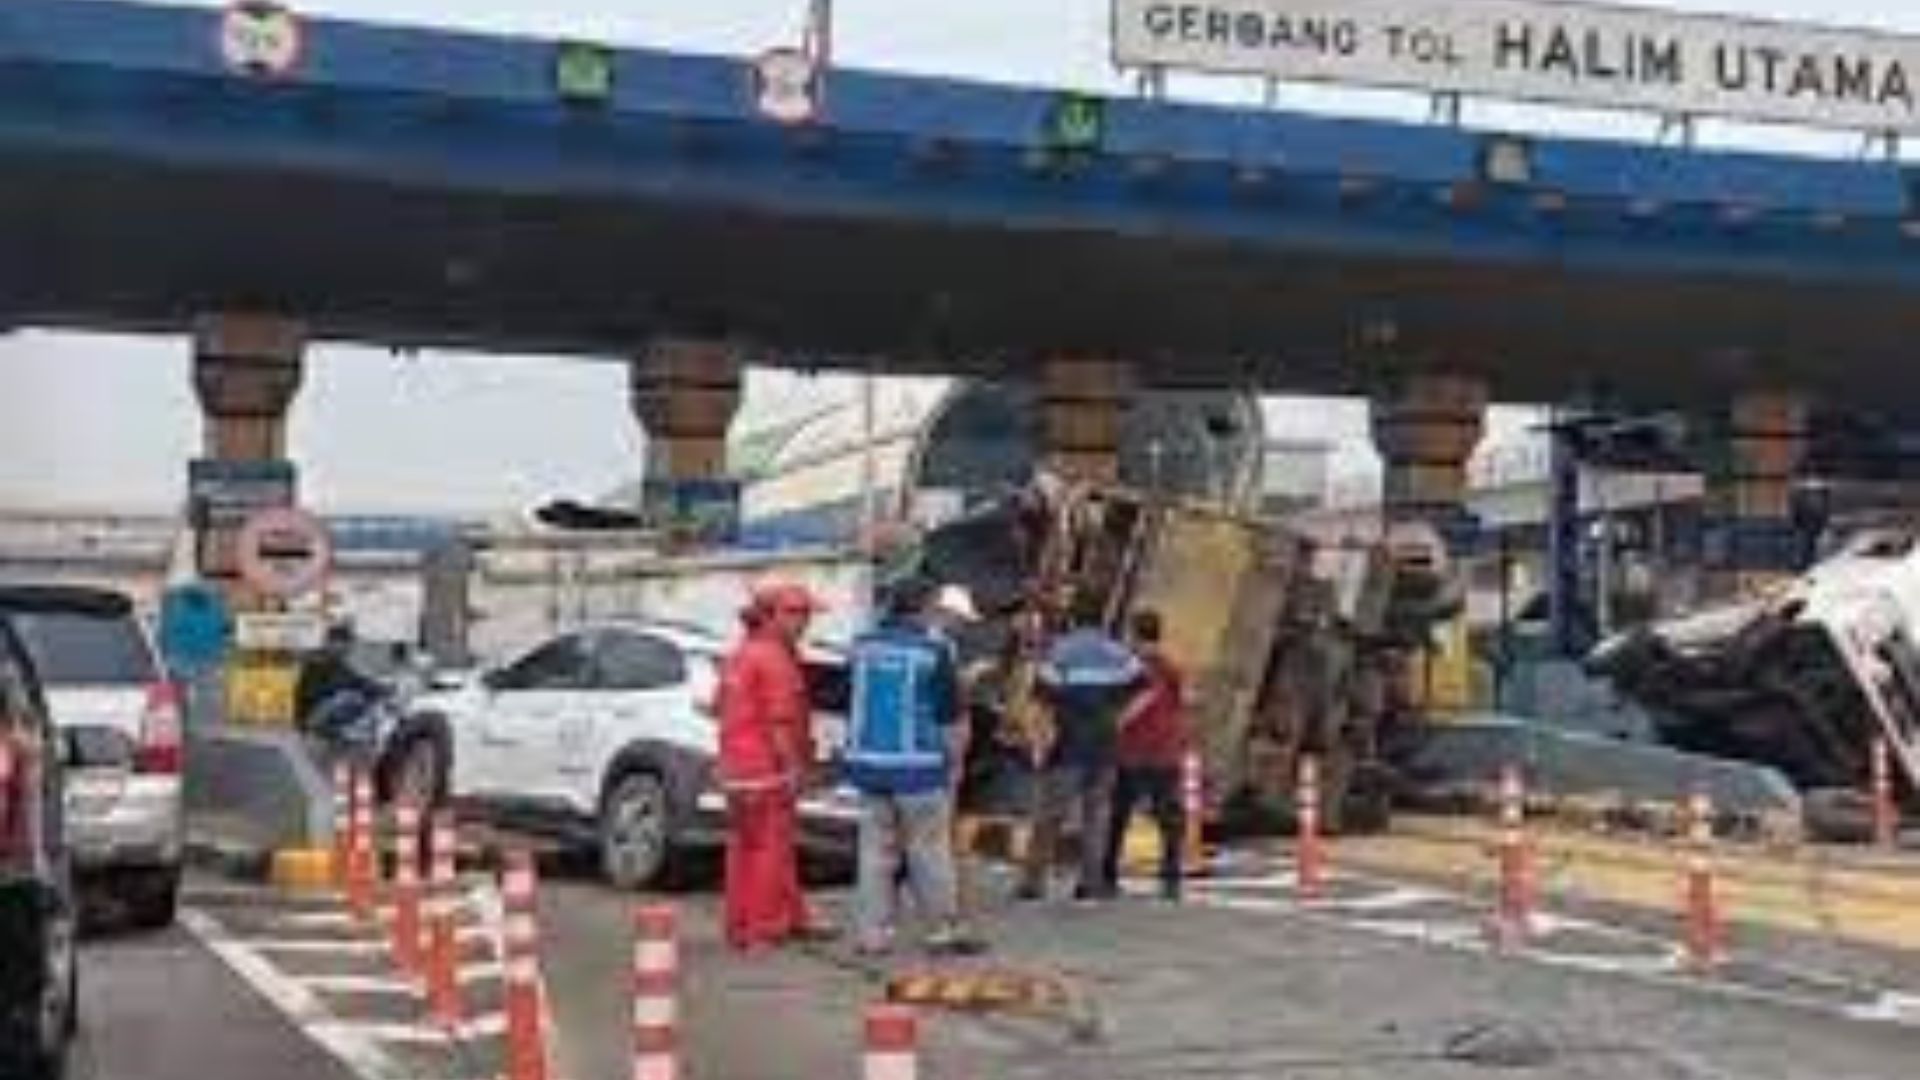 Kecelakaan Beruntun di Gerbang Tol Halim Utama